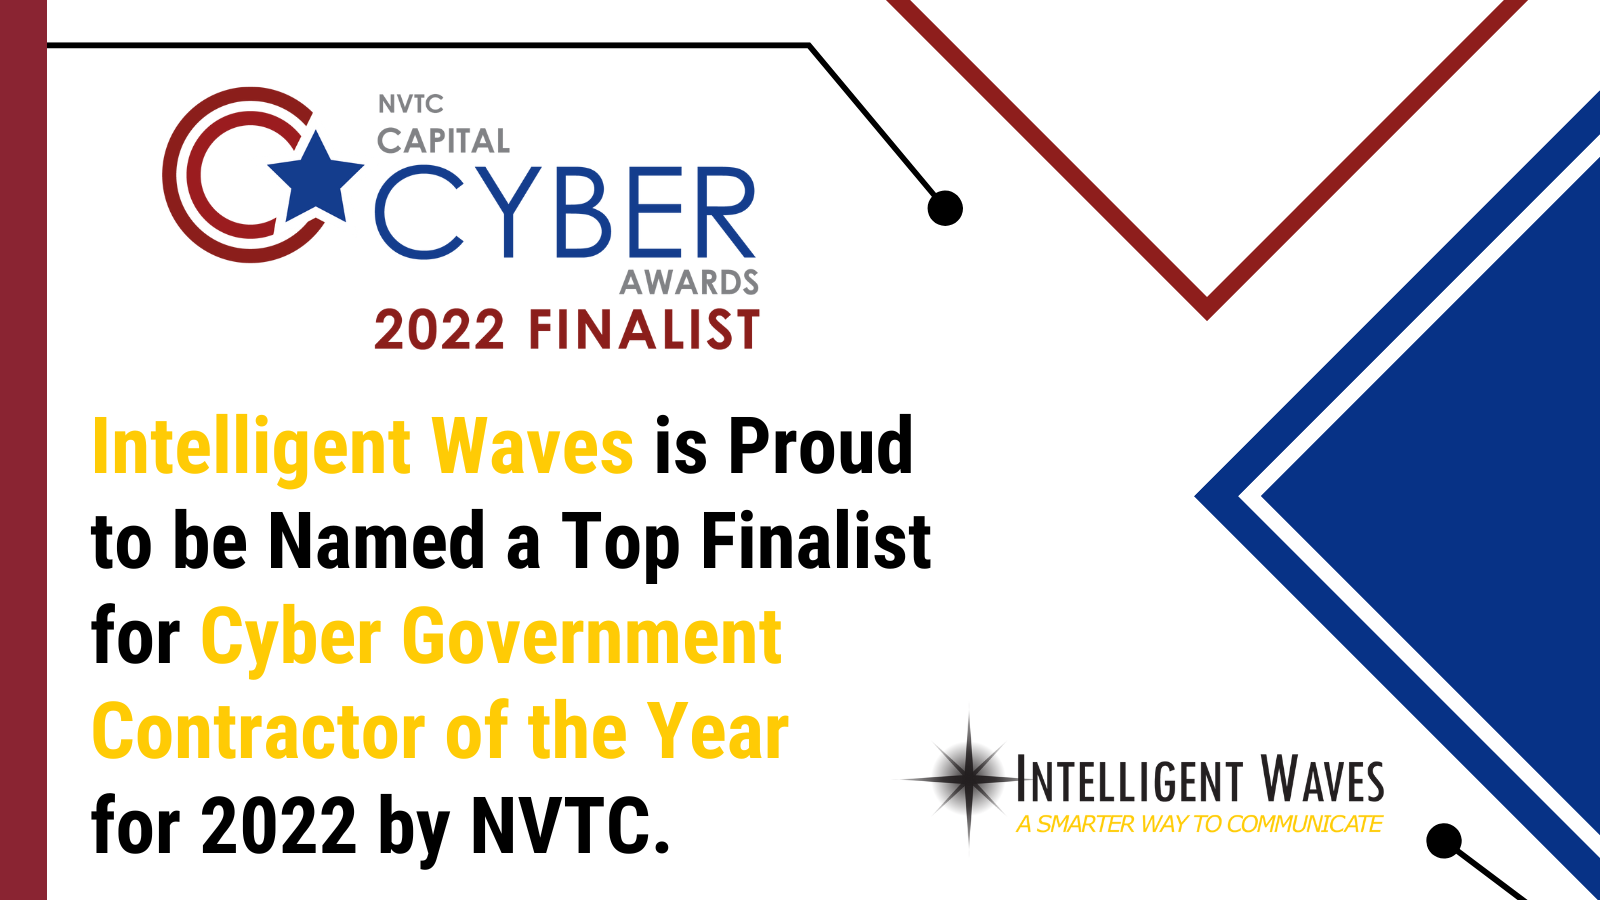 NVTC Capital Cyber Awards 2022